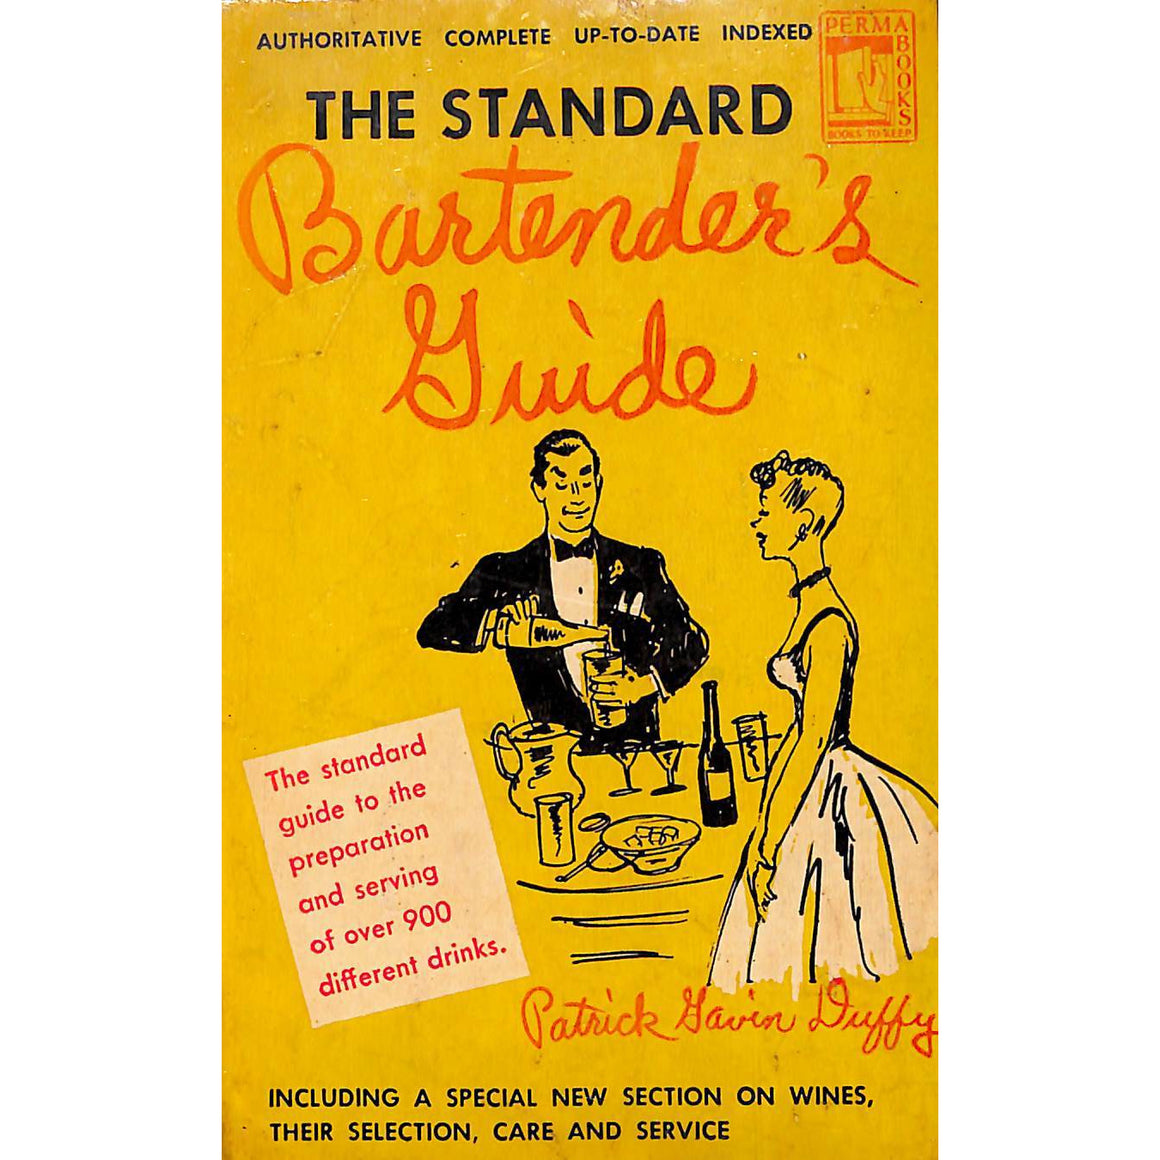 The Standard Bartender's Guide